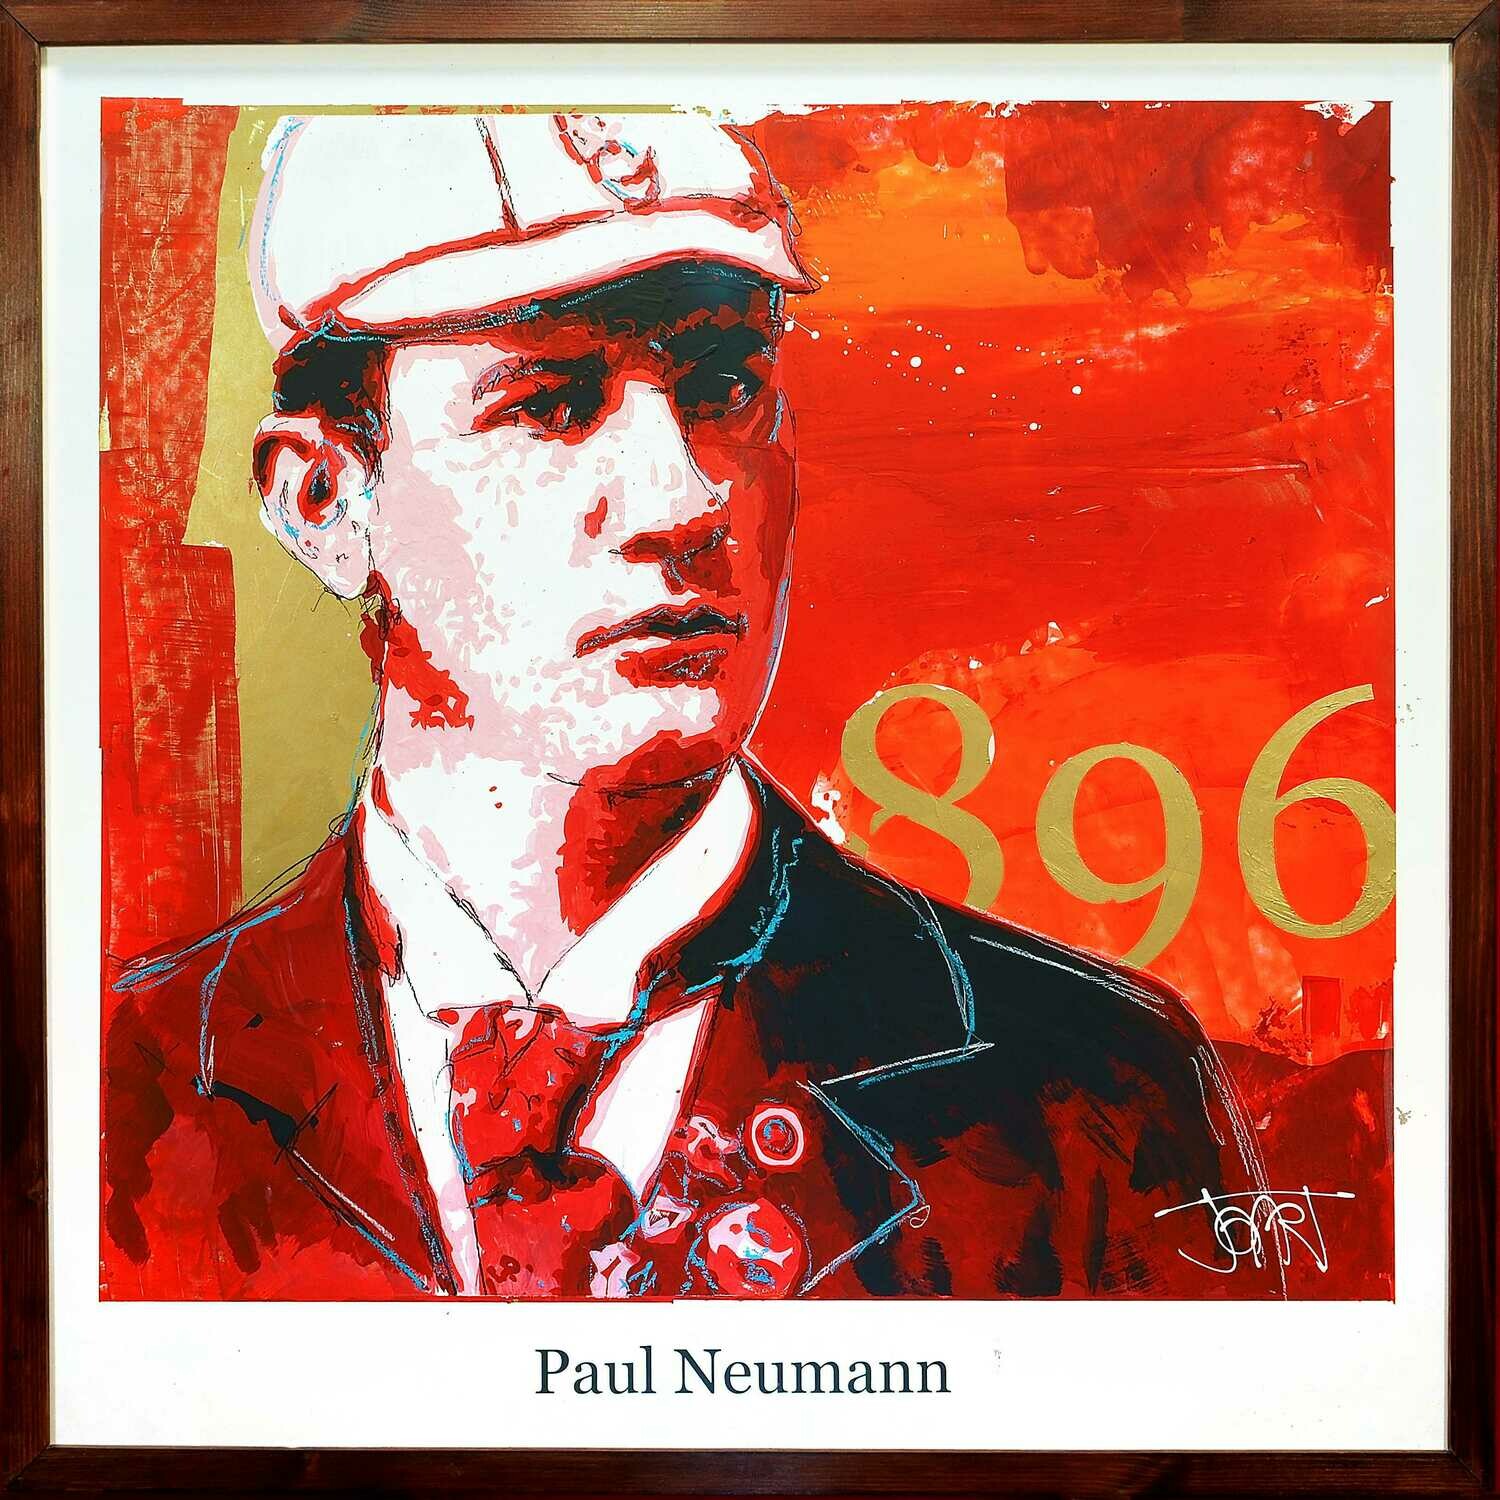 Paul Neumann